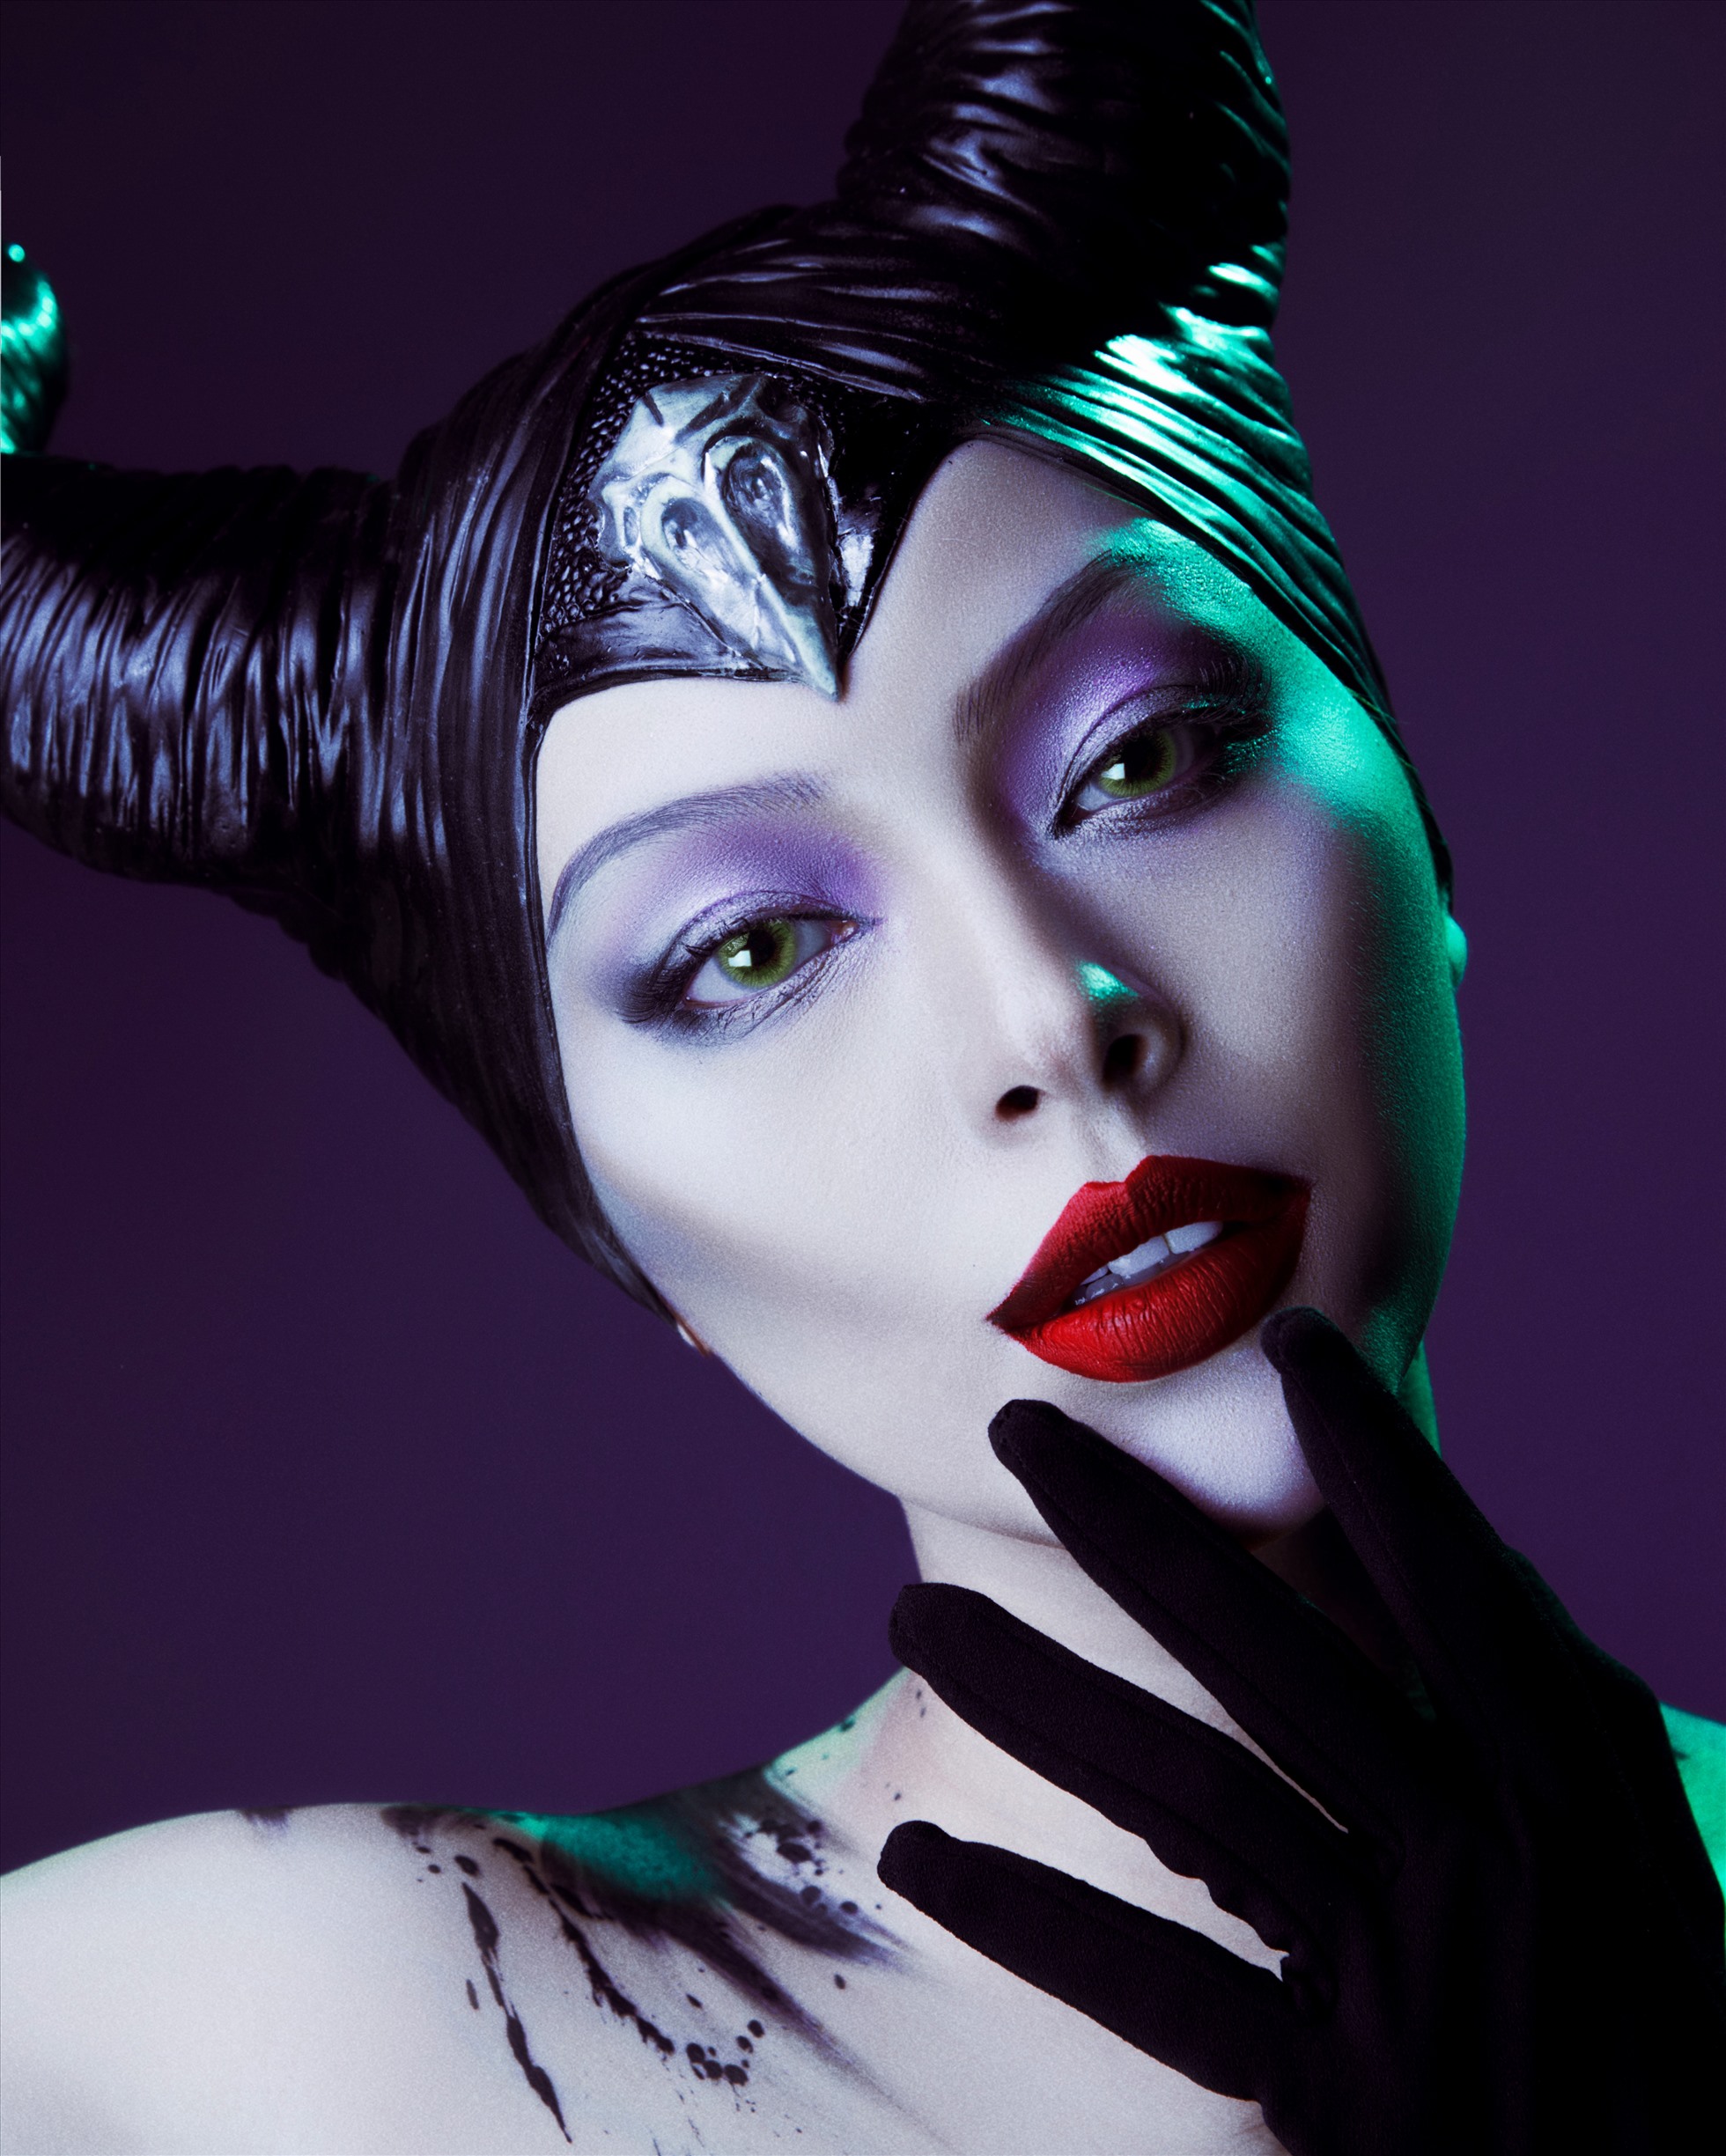 Từ bộ trang phục bắt mắt đến bộ sừng uy nghi hoành tráng, cách make up chuẩn đến từng milimet, tất cả đã tạo nên một “ác nữ” Maleficent phiên bản Tú Hảo chẳng hề thua kém bản gốc.